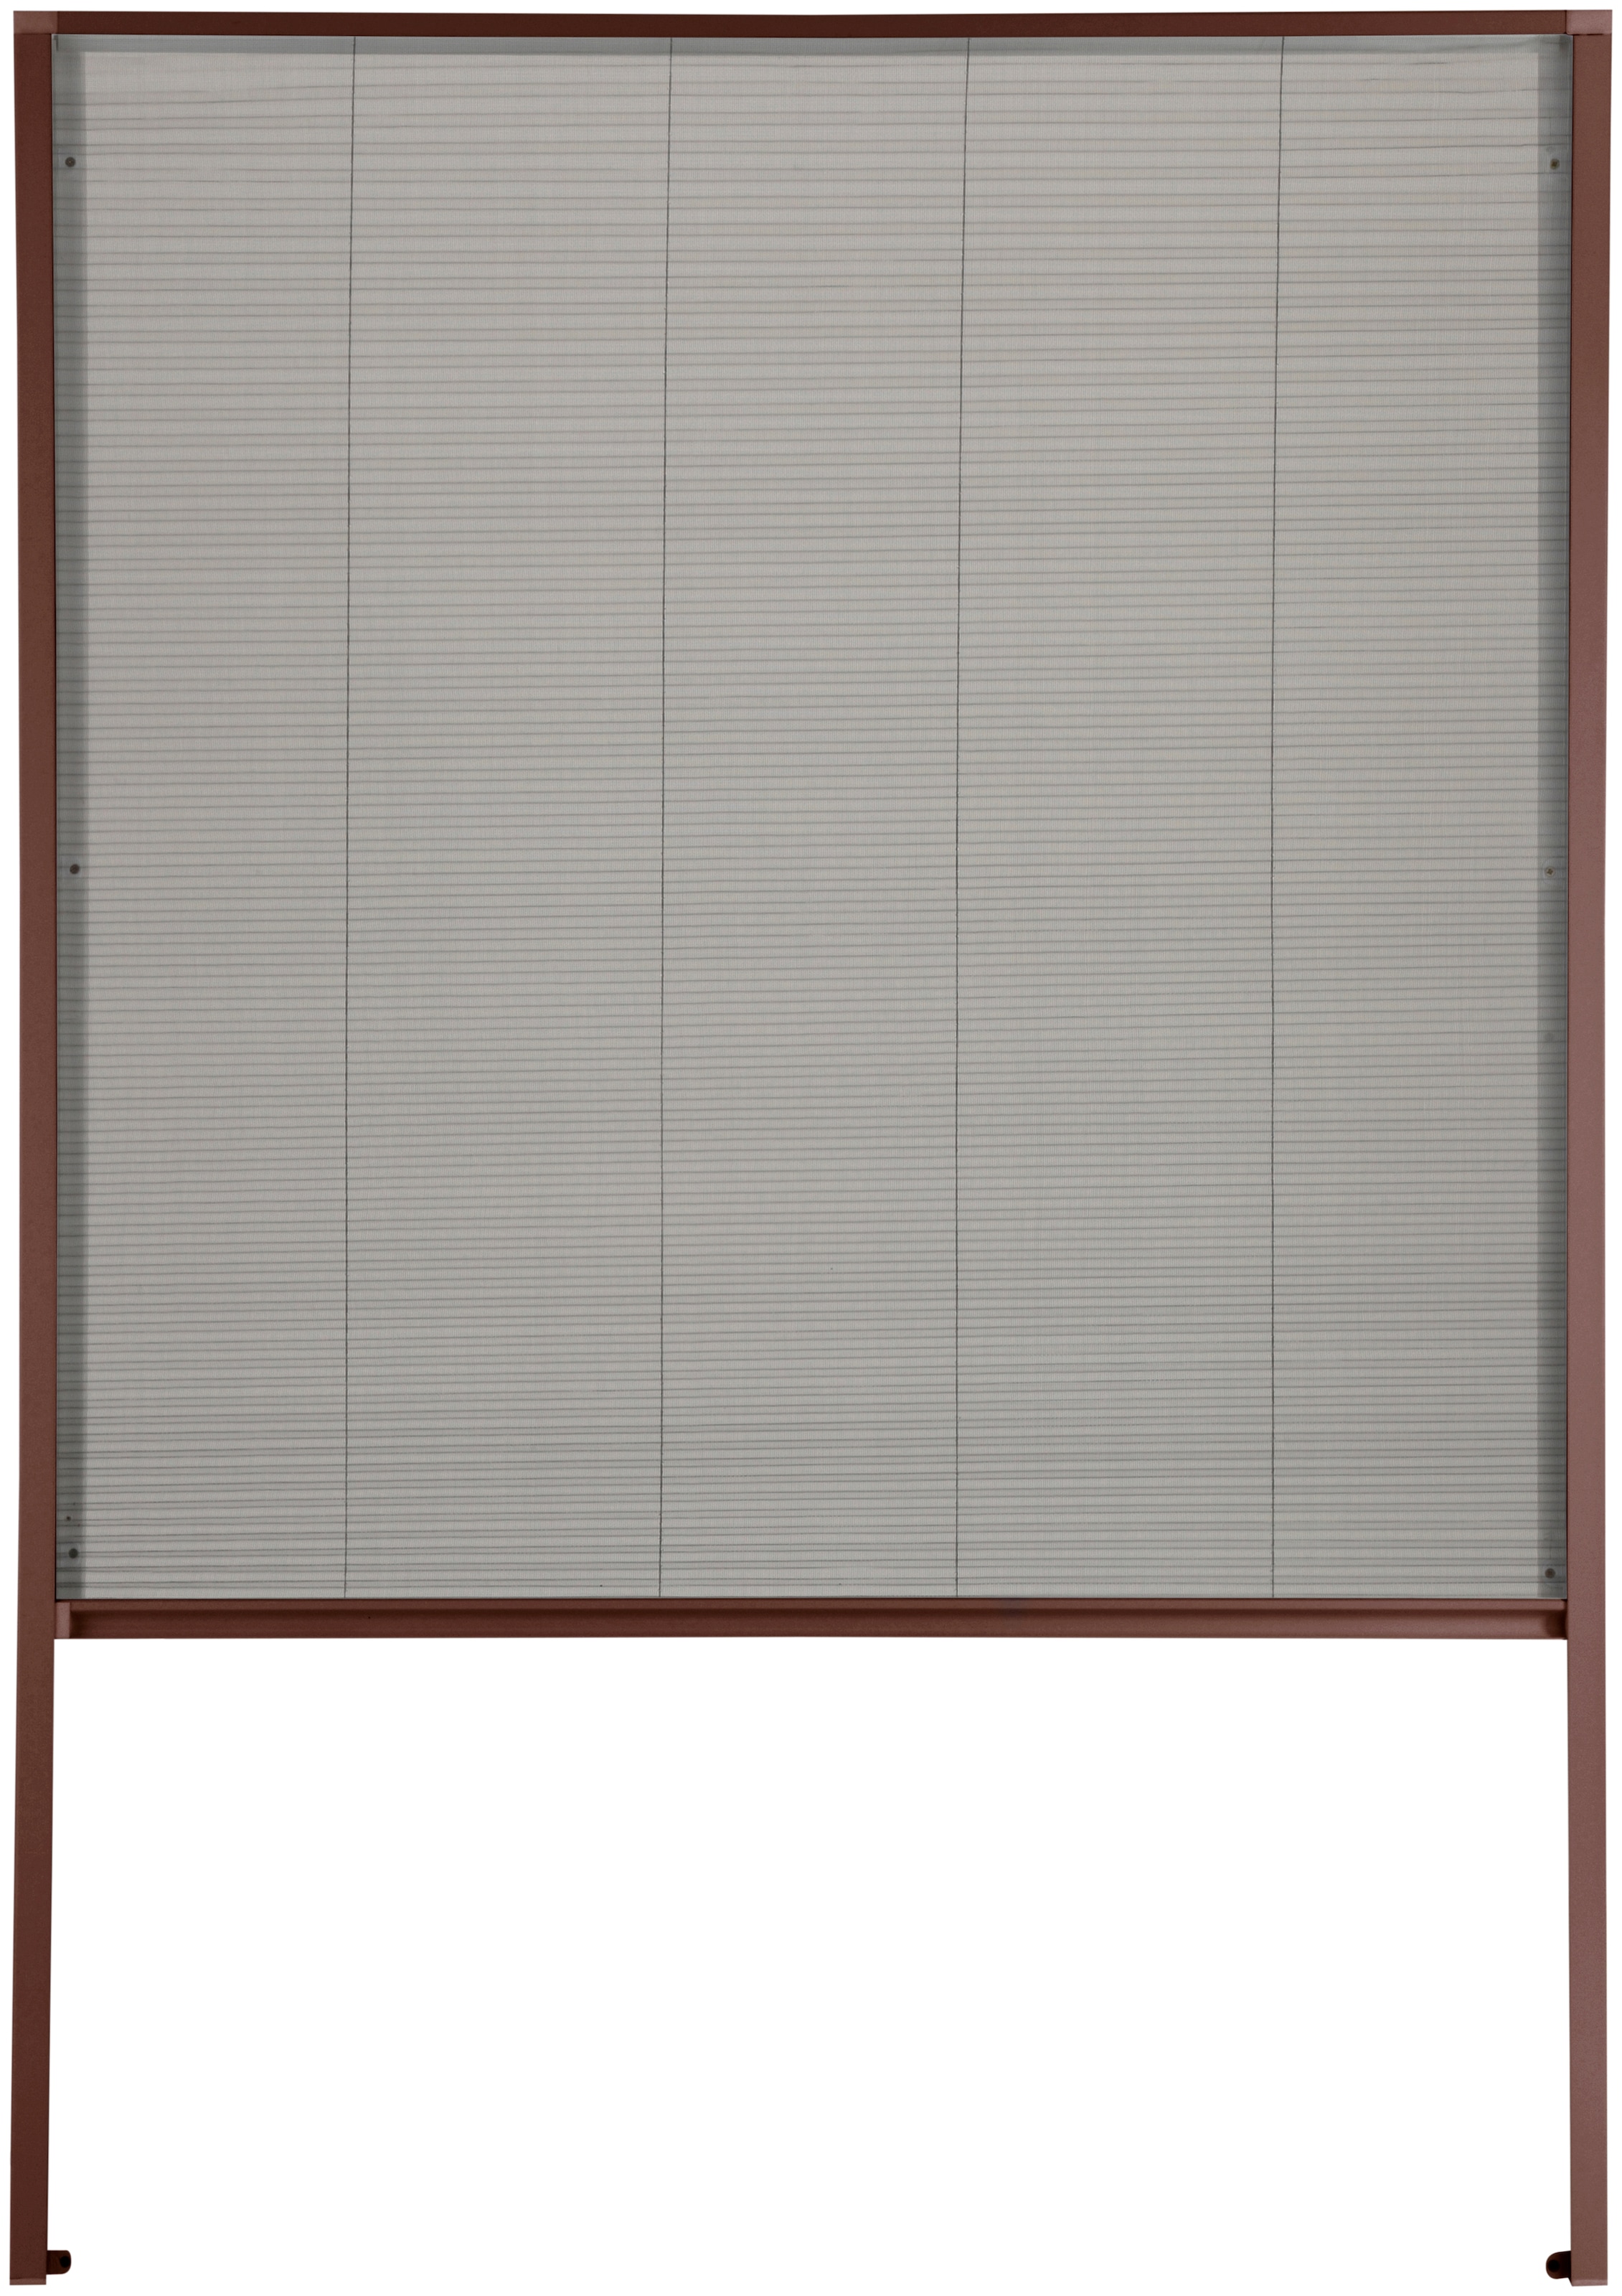 hecht international Insektenschutzrollo "für Dachfenster", transparent, braun/anthrazit, BxH: 110x160 cm